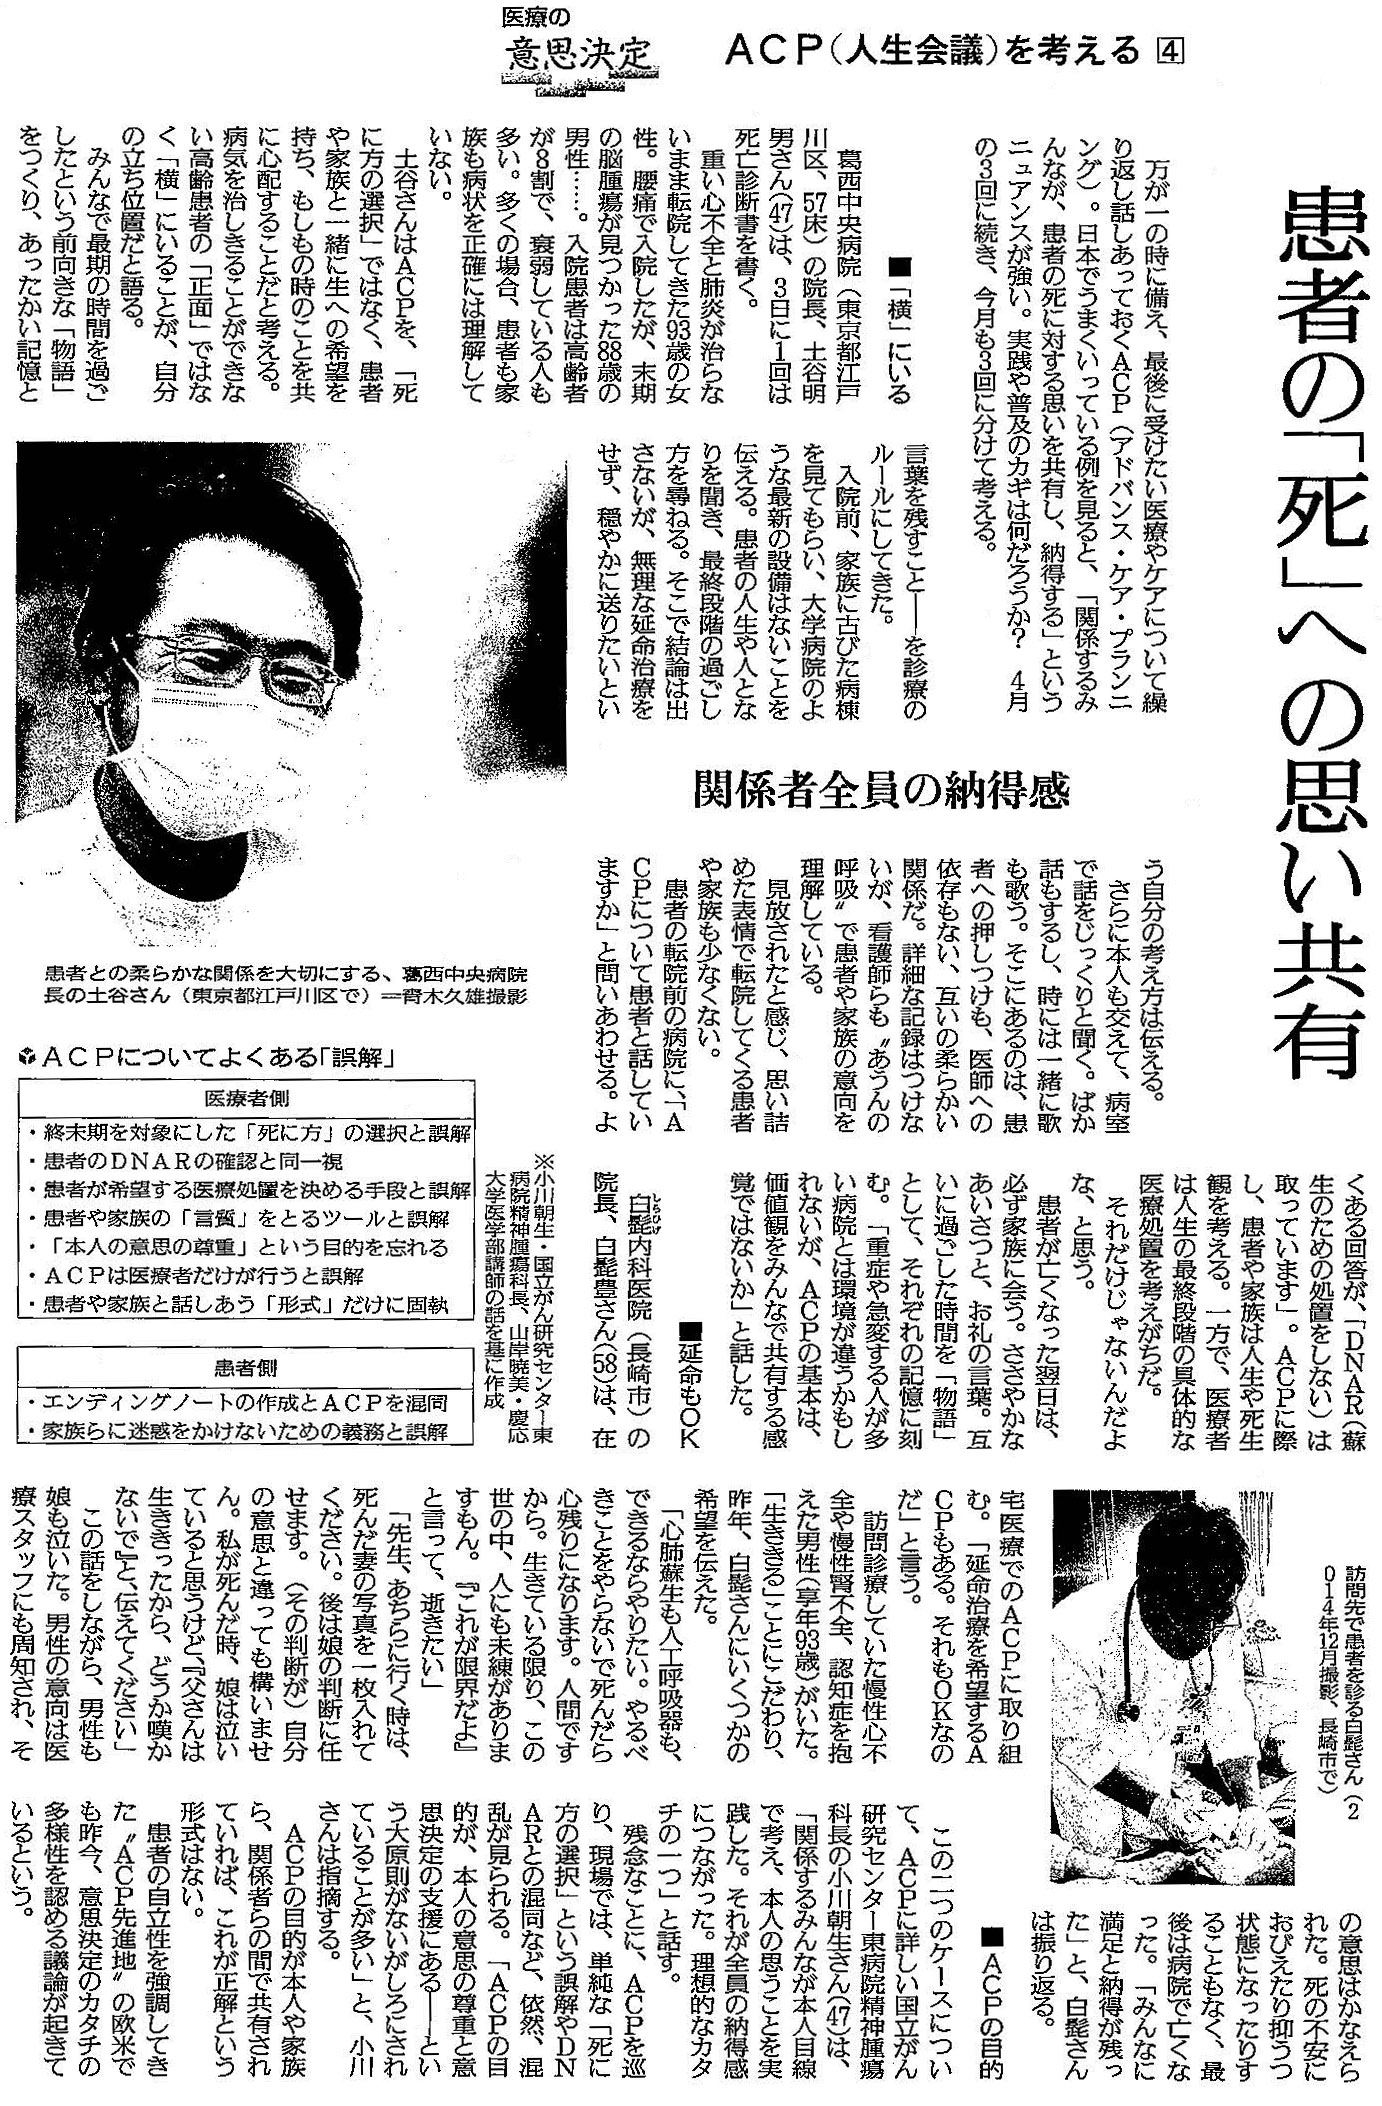 読売新聞 2020年5月25日掲載記事